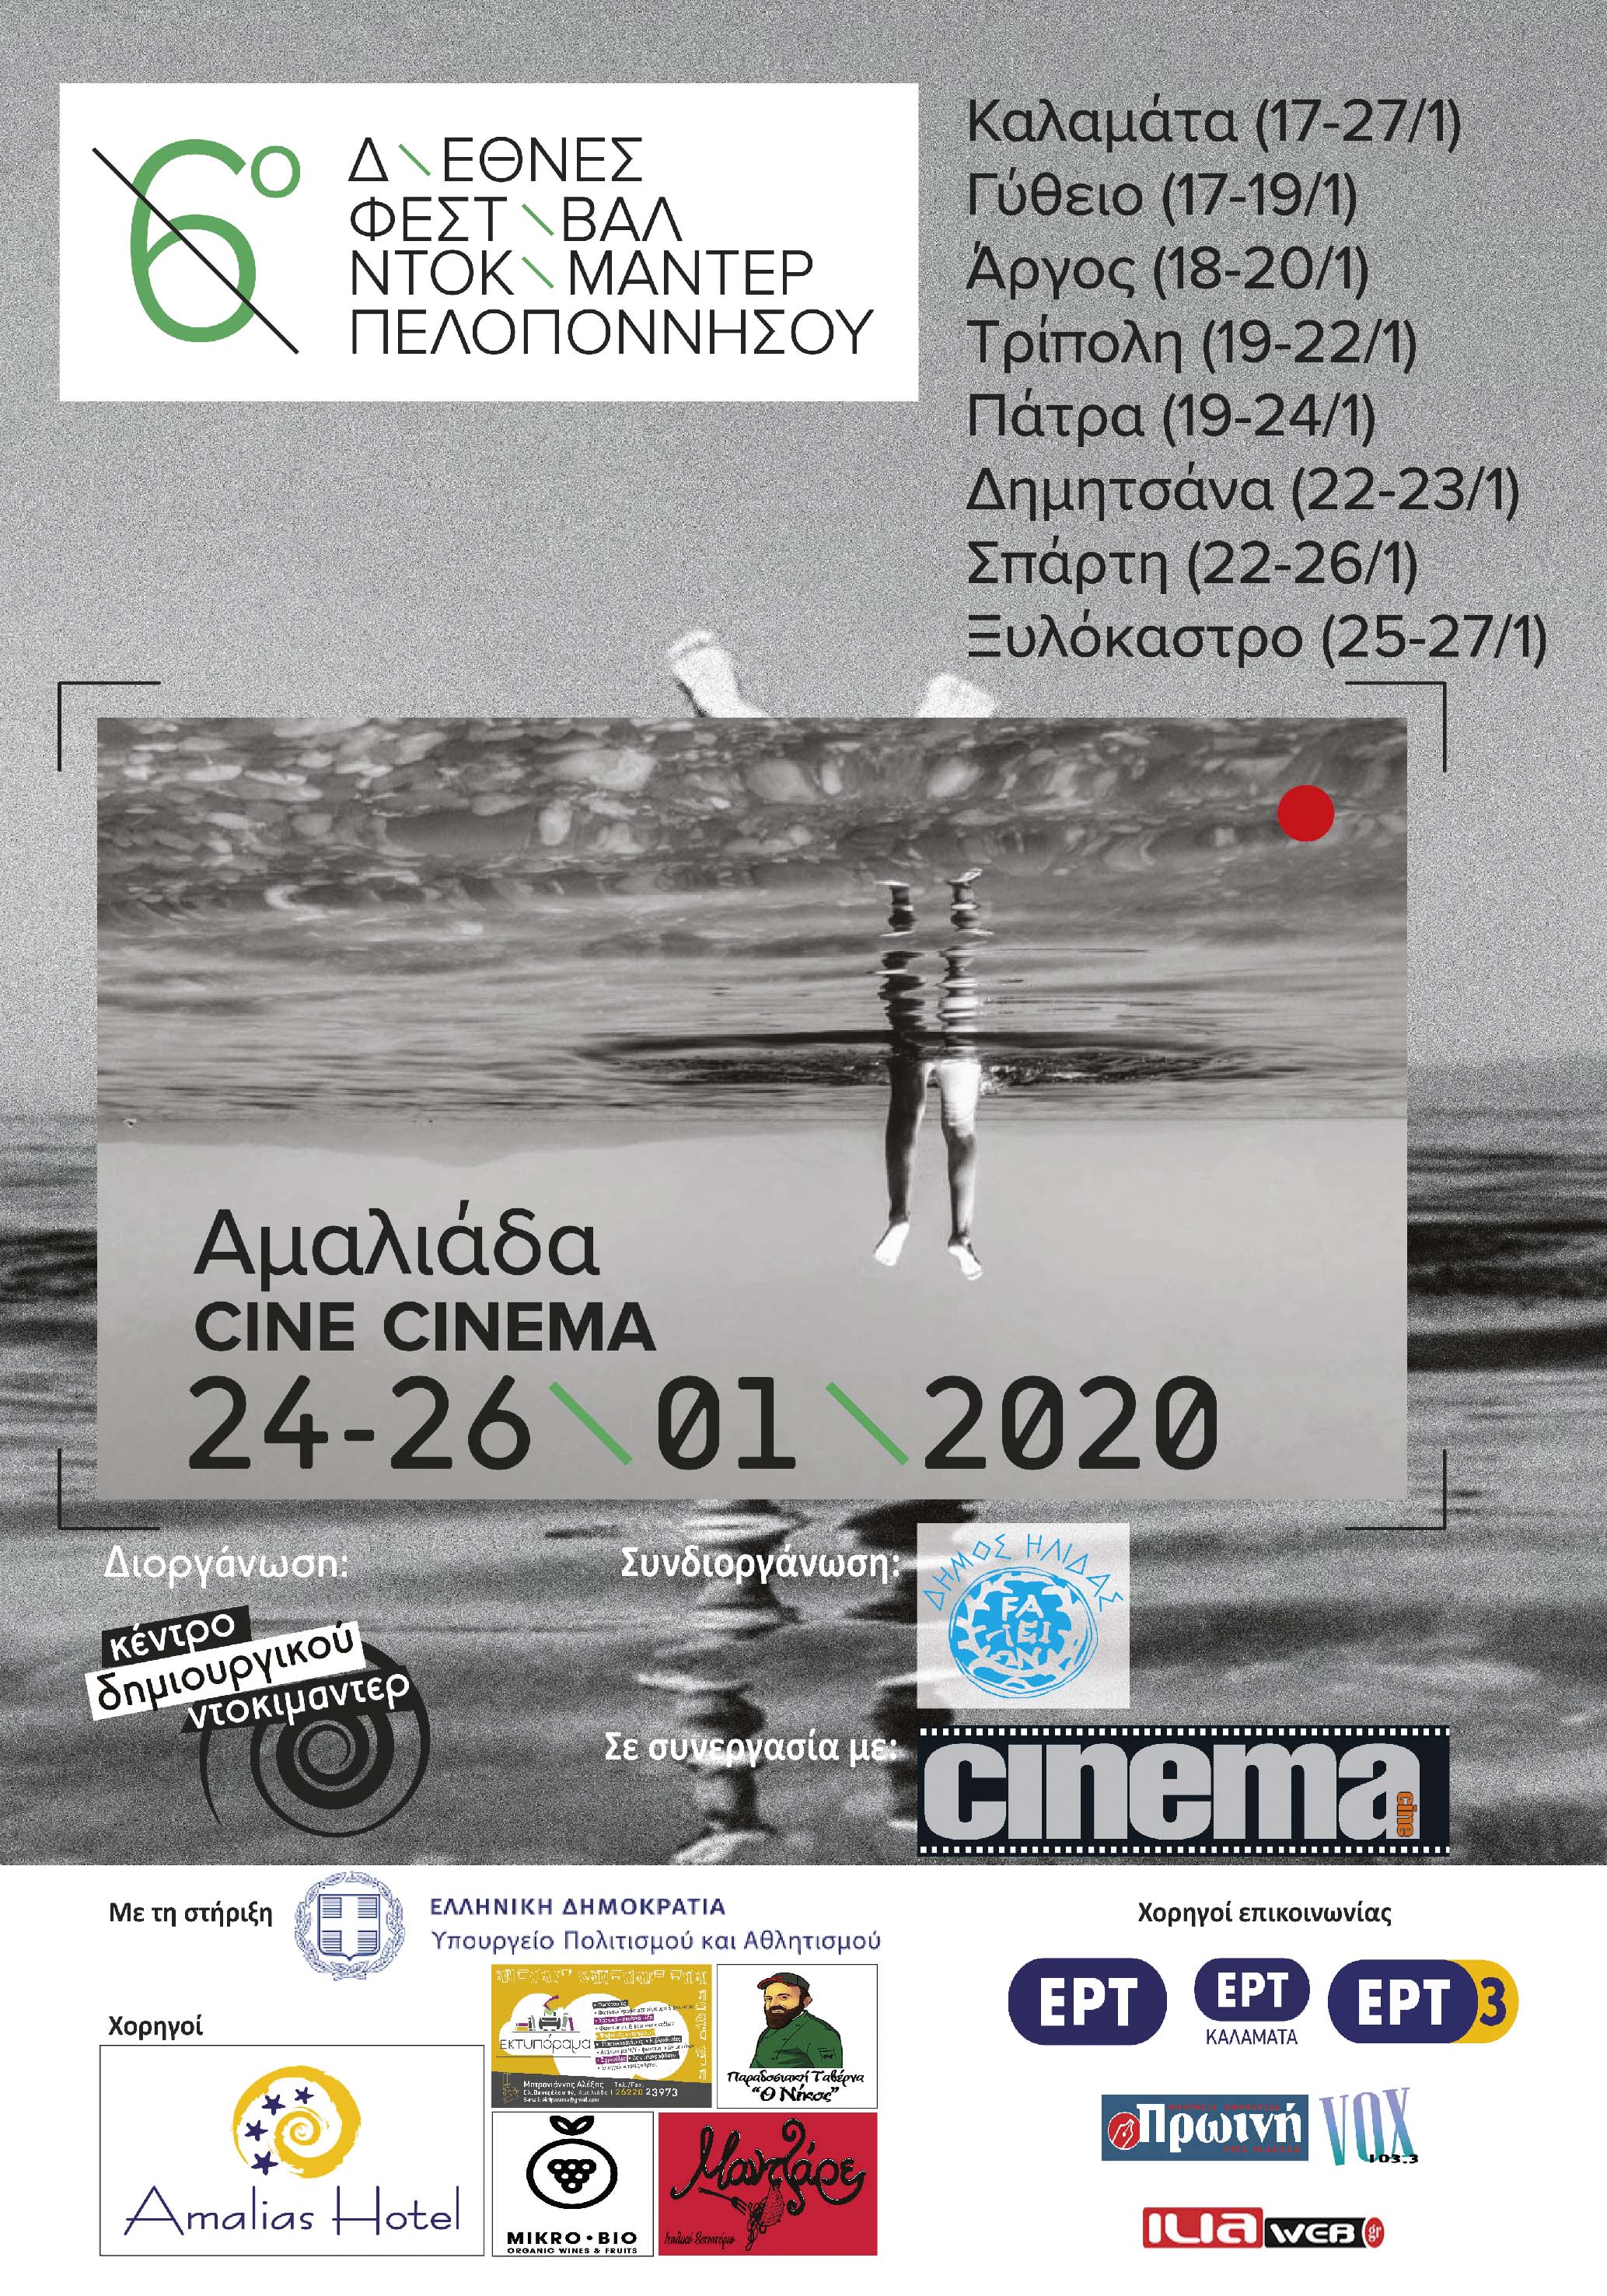 Το ντοκιμαντέρ για 6η χρονιά στην Αμαλιάδα και στο Cine Cinema στα πλαίσια του Διεθνούς Φεστιβάλ Ντοκιμαντέρ Πελοποννήσου - Το Πρόγραμμα -Ελεύθερη είσοδος για το κοινό